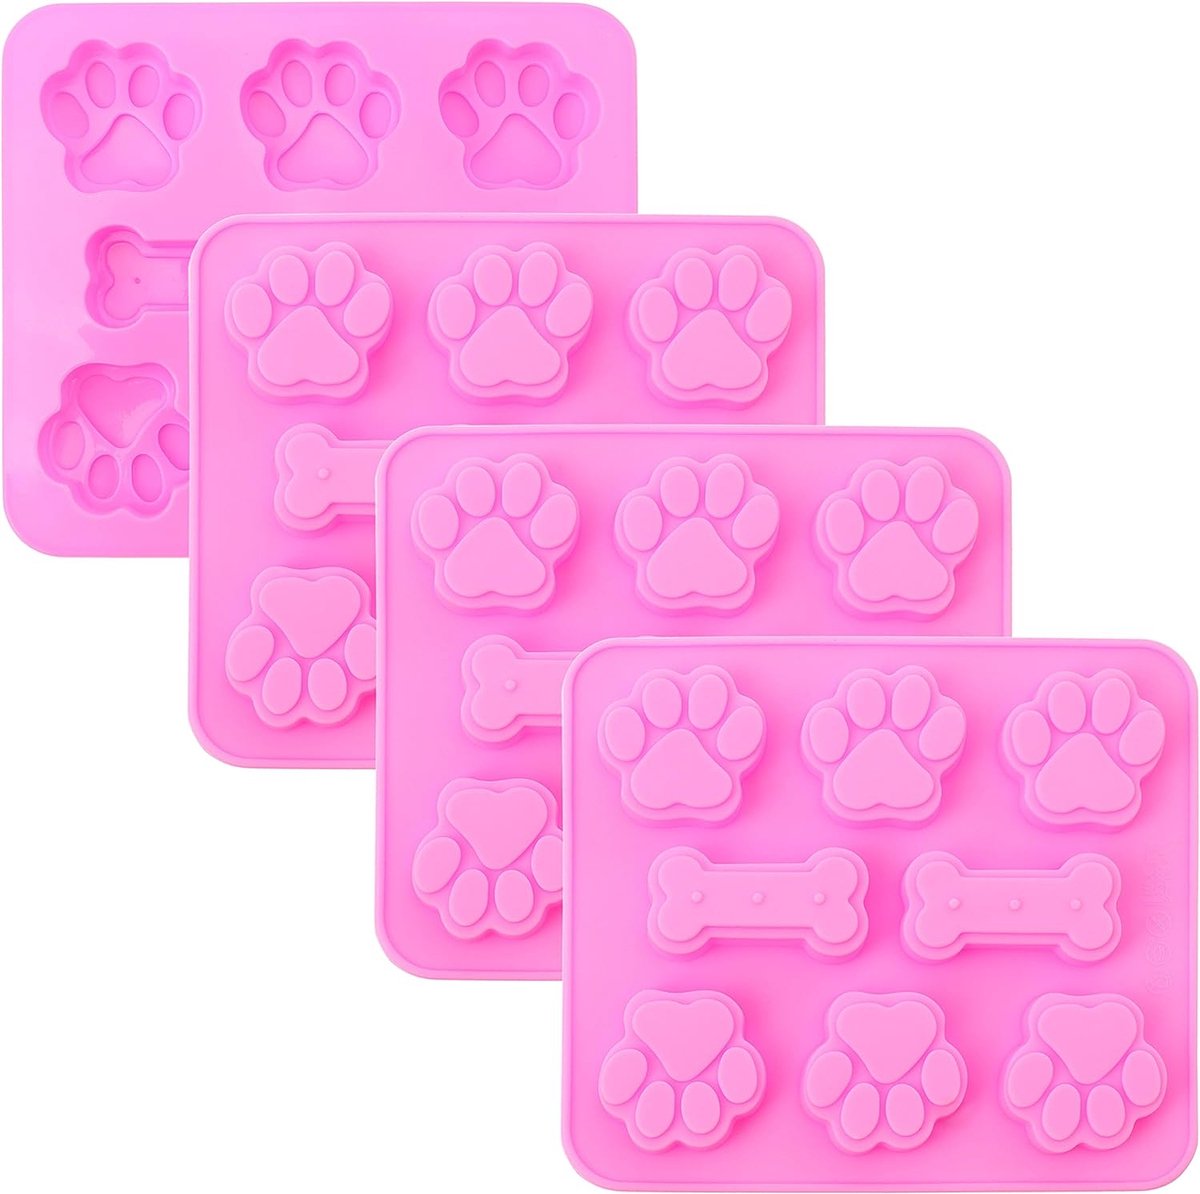 2-in-1 puppy hond poot en bot siliconen mallen, niet-klevende food grade siliconen mallen voor chocolade, snoep, gelei, ijsblokjes, hondensnoepjes